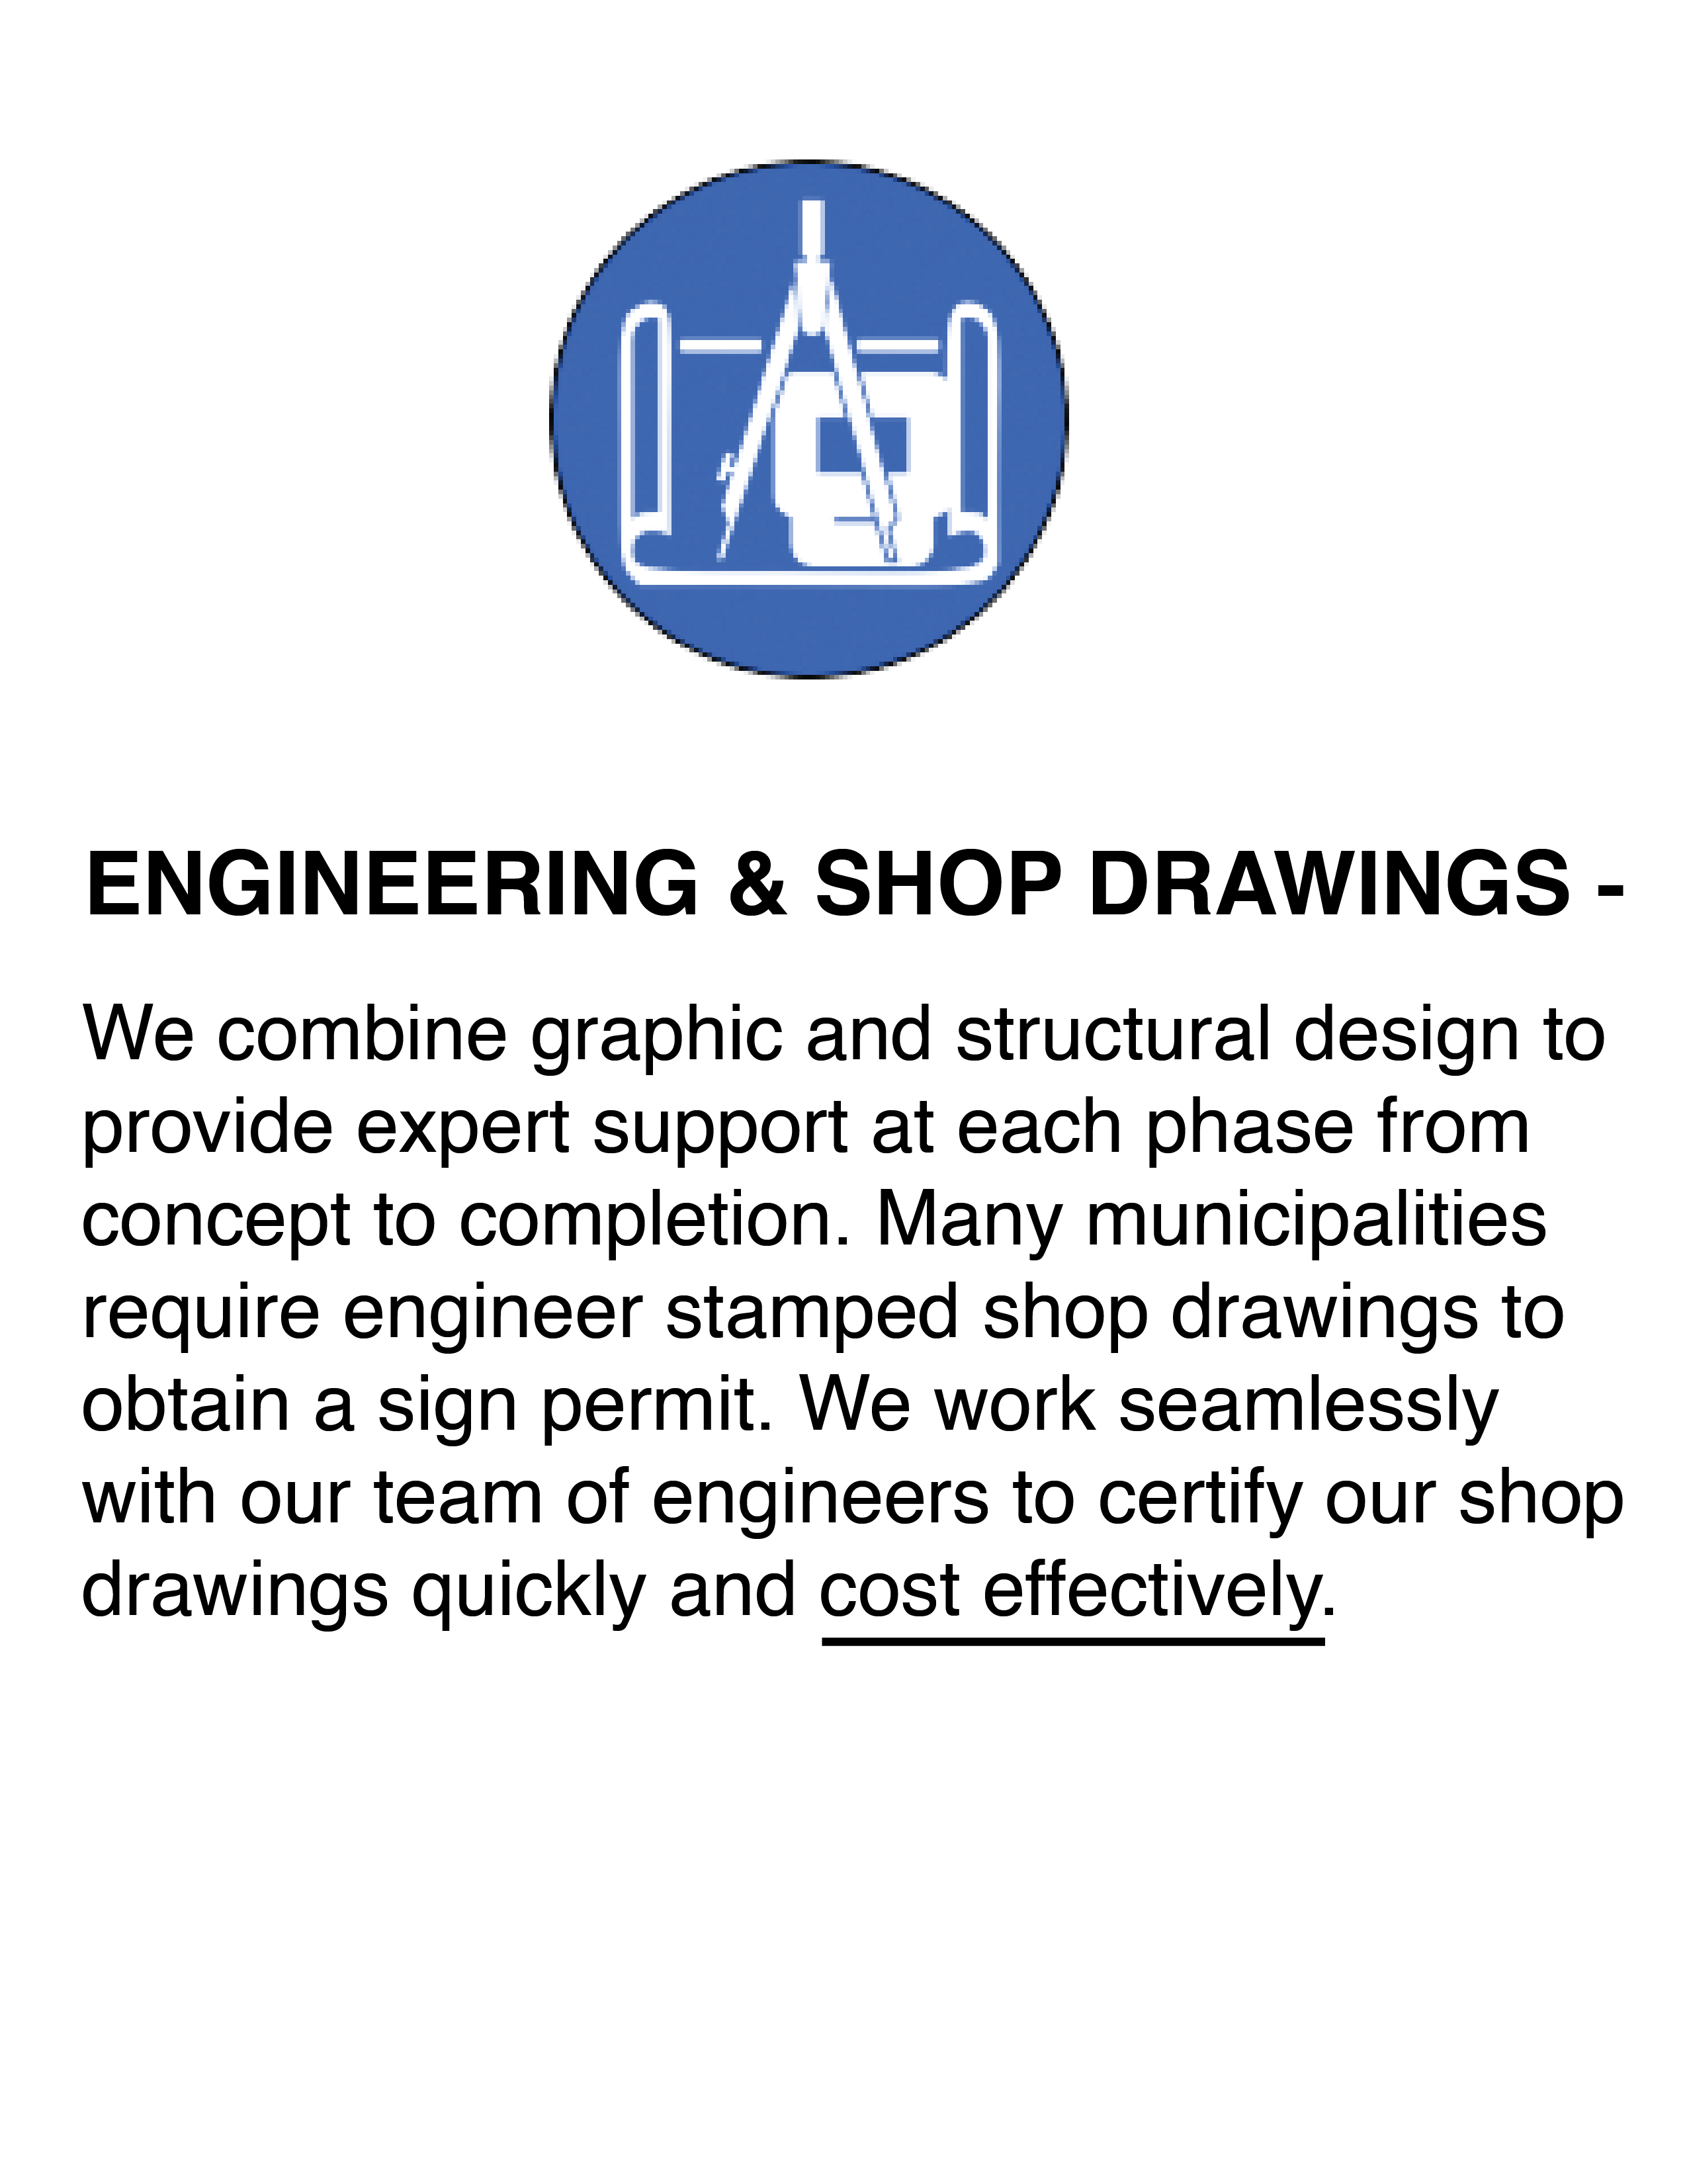 Engineering & Shop Drawings Blurbs